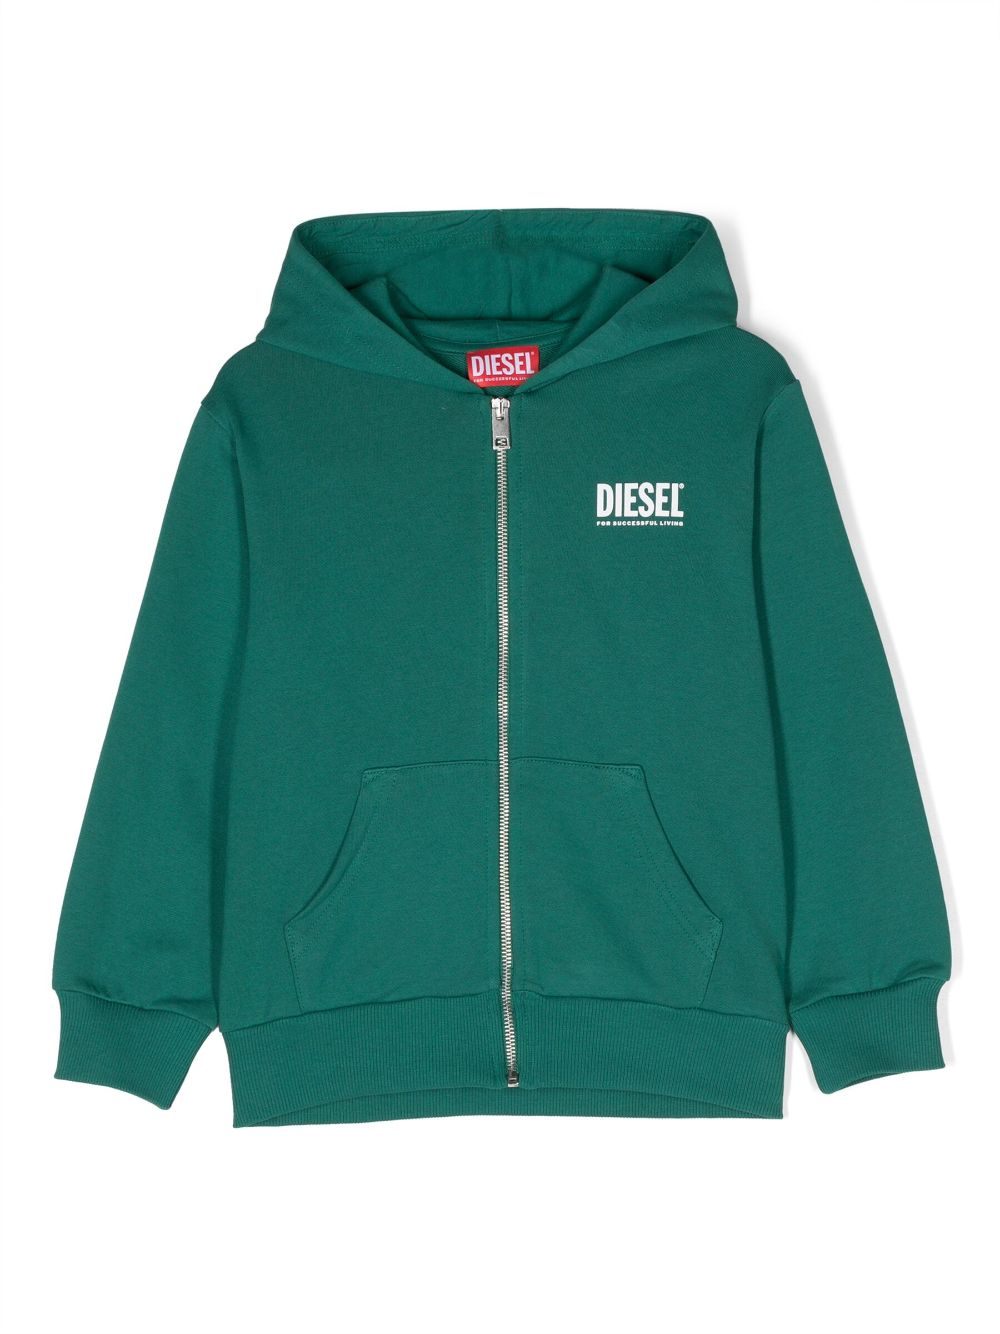 Diesel Kids logo-print zip-up hoodie - Green